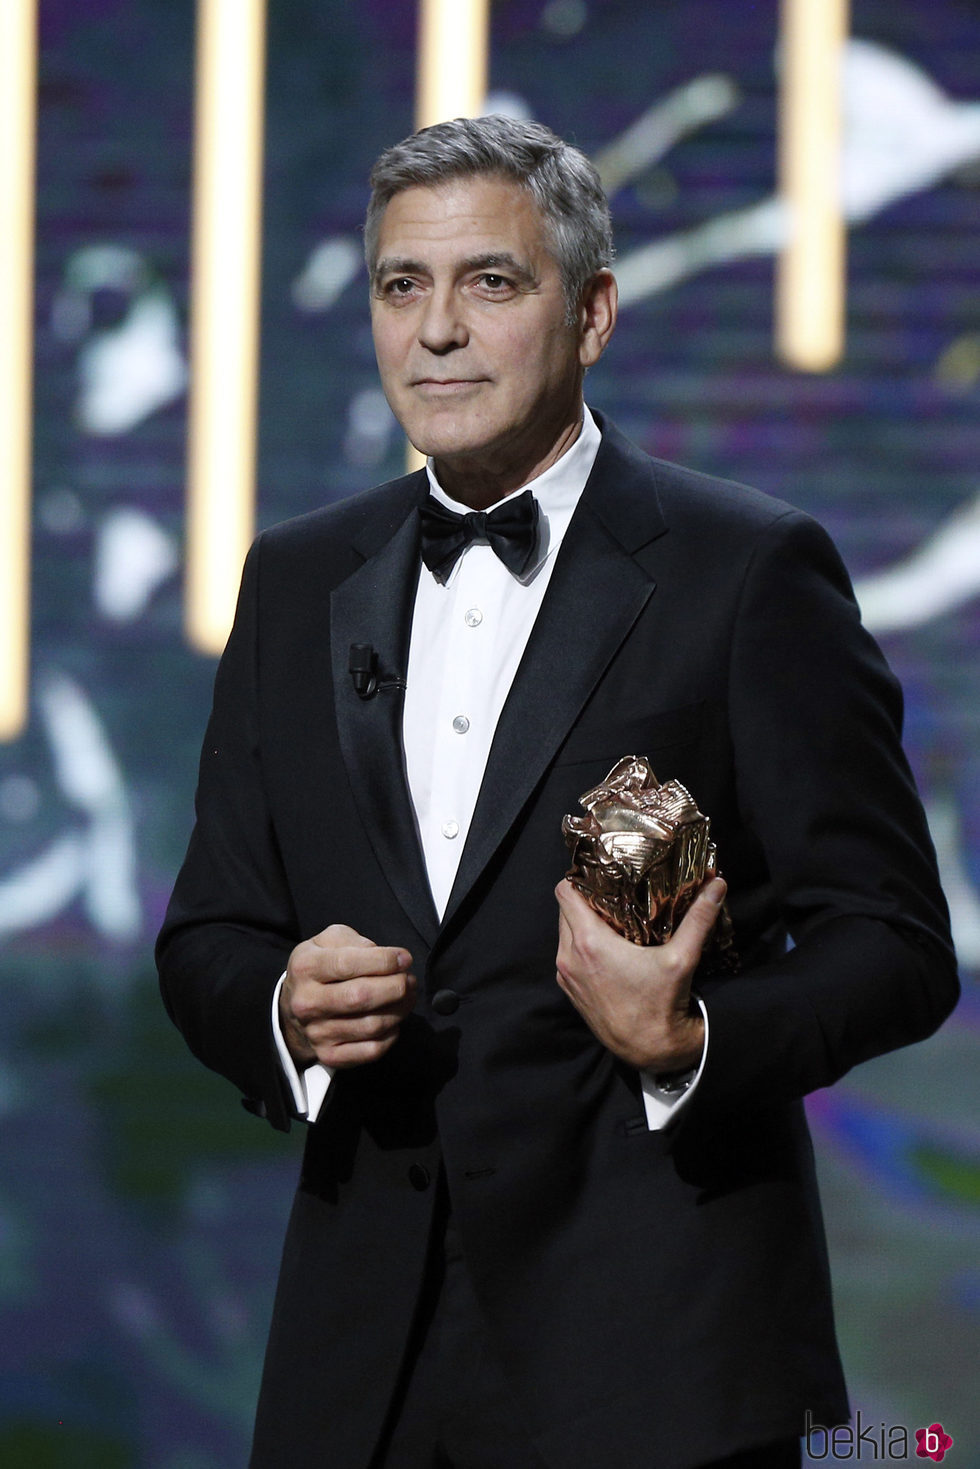 George Clooney recibiendo el Premio César de Honor 2017